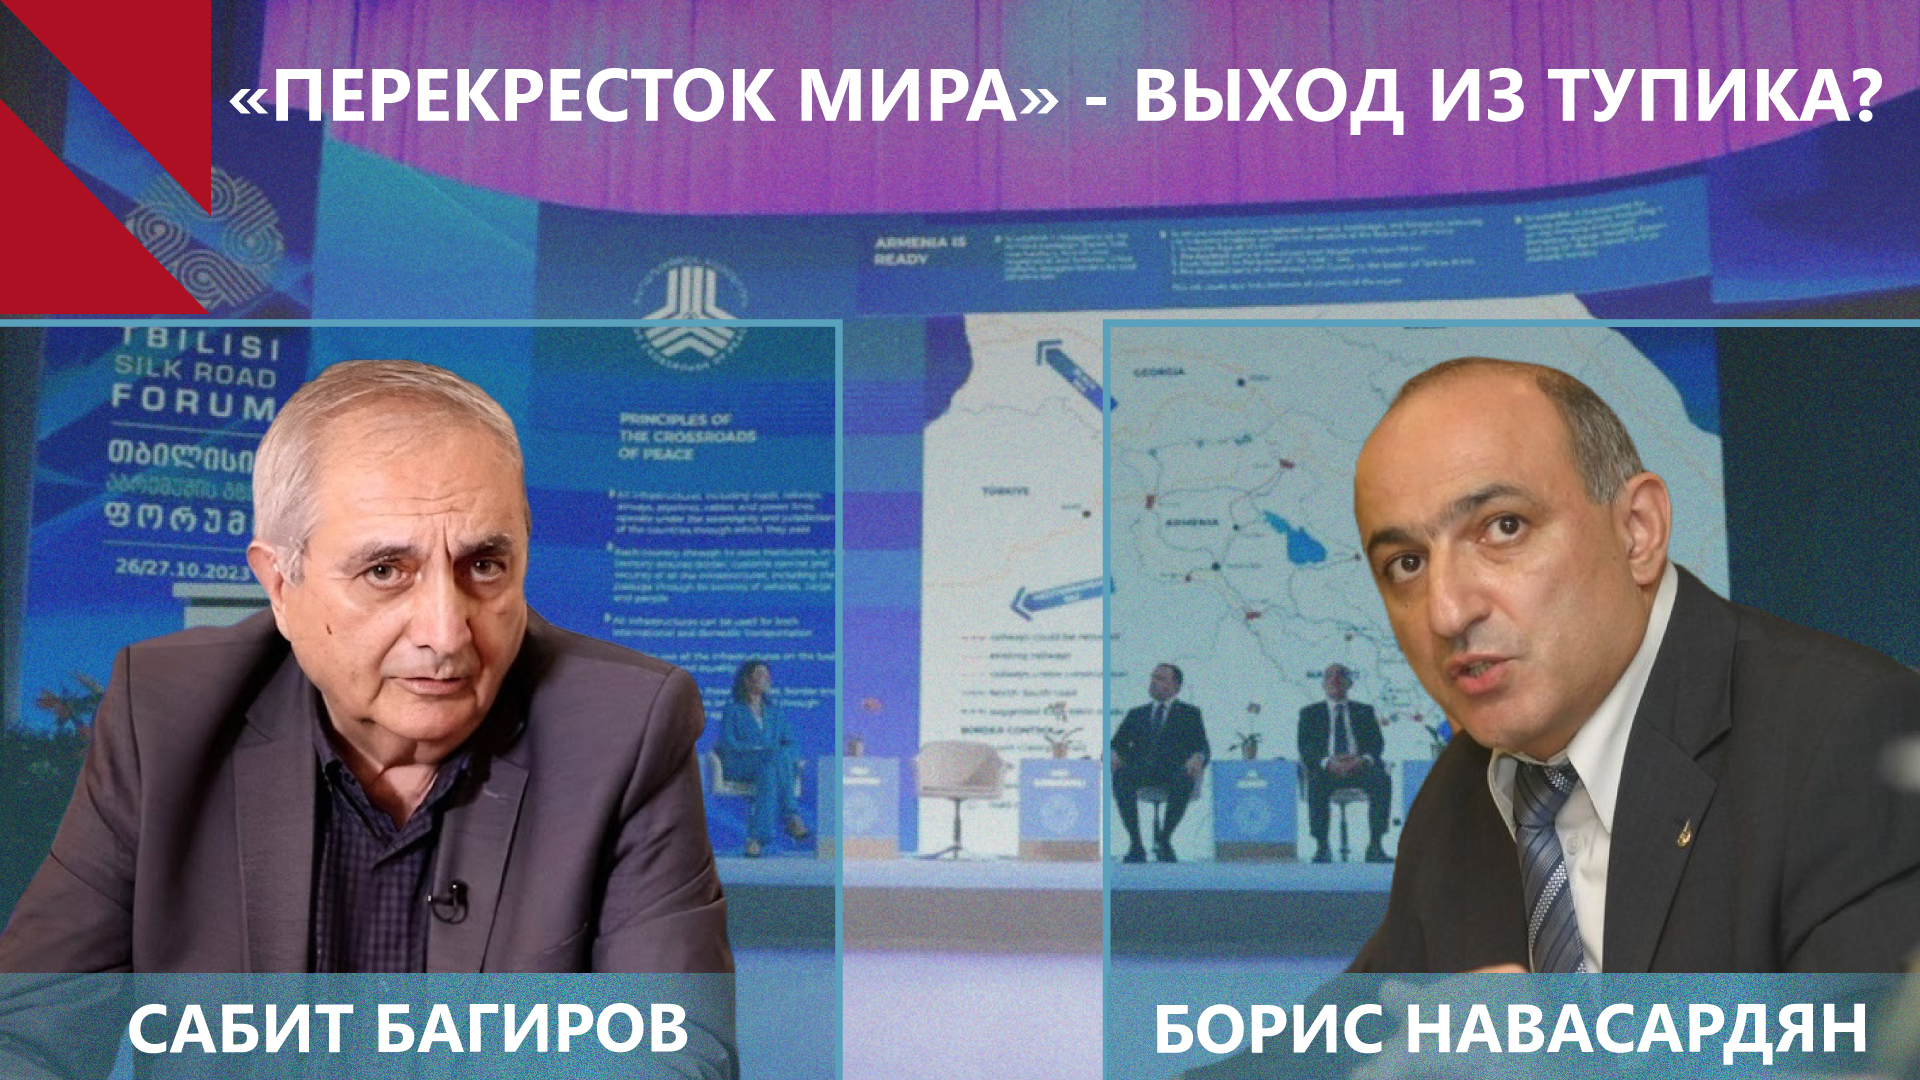 «Перекресток мира» превратит Армению в региональный хаб? Борис Навасардян | Сабит Багиров